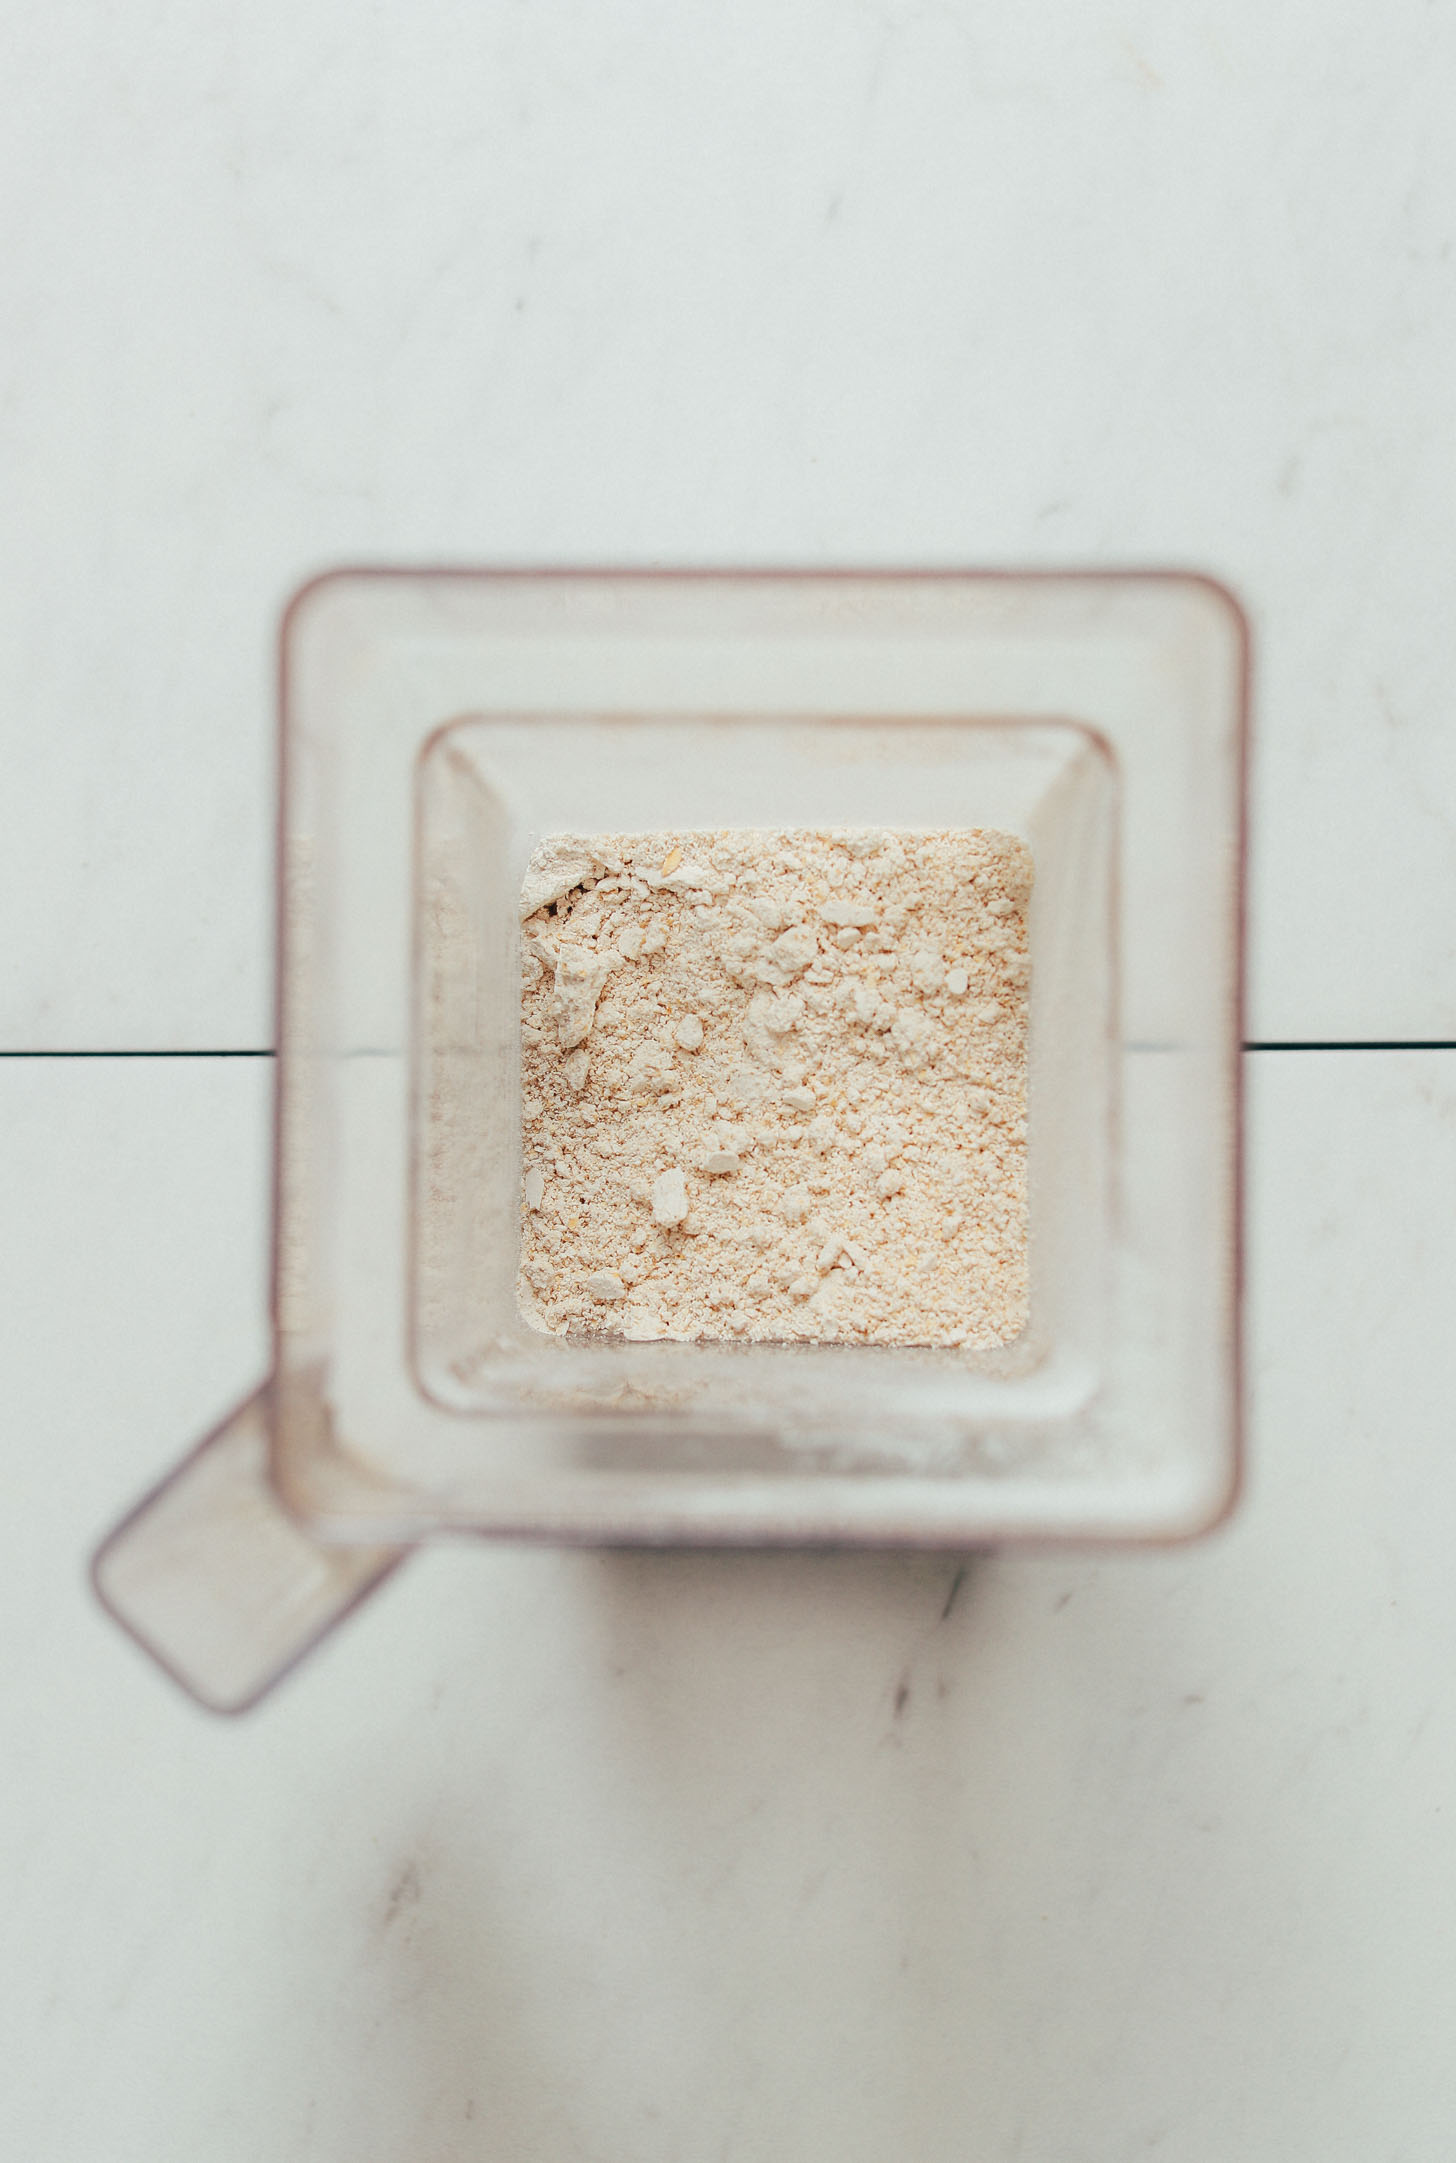 Blender of freshly made DIY oat flour